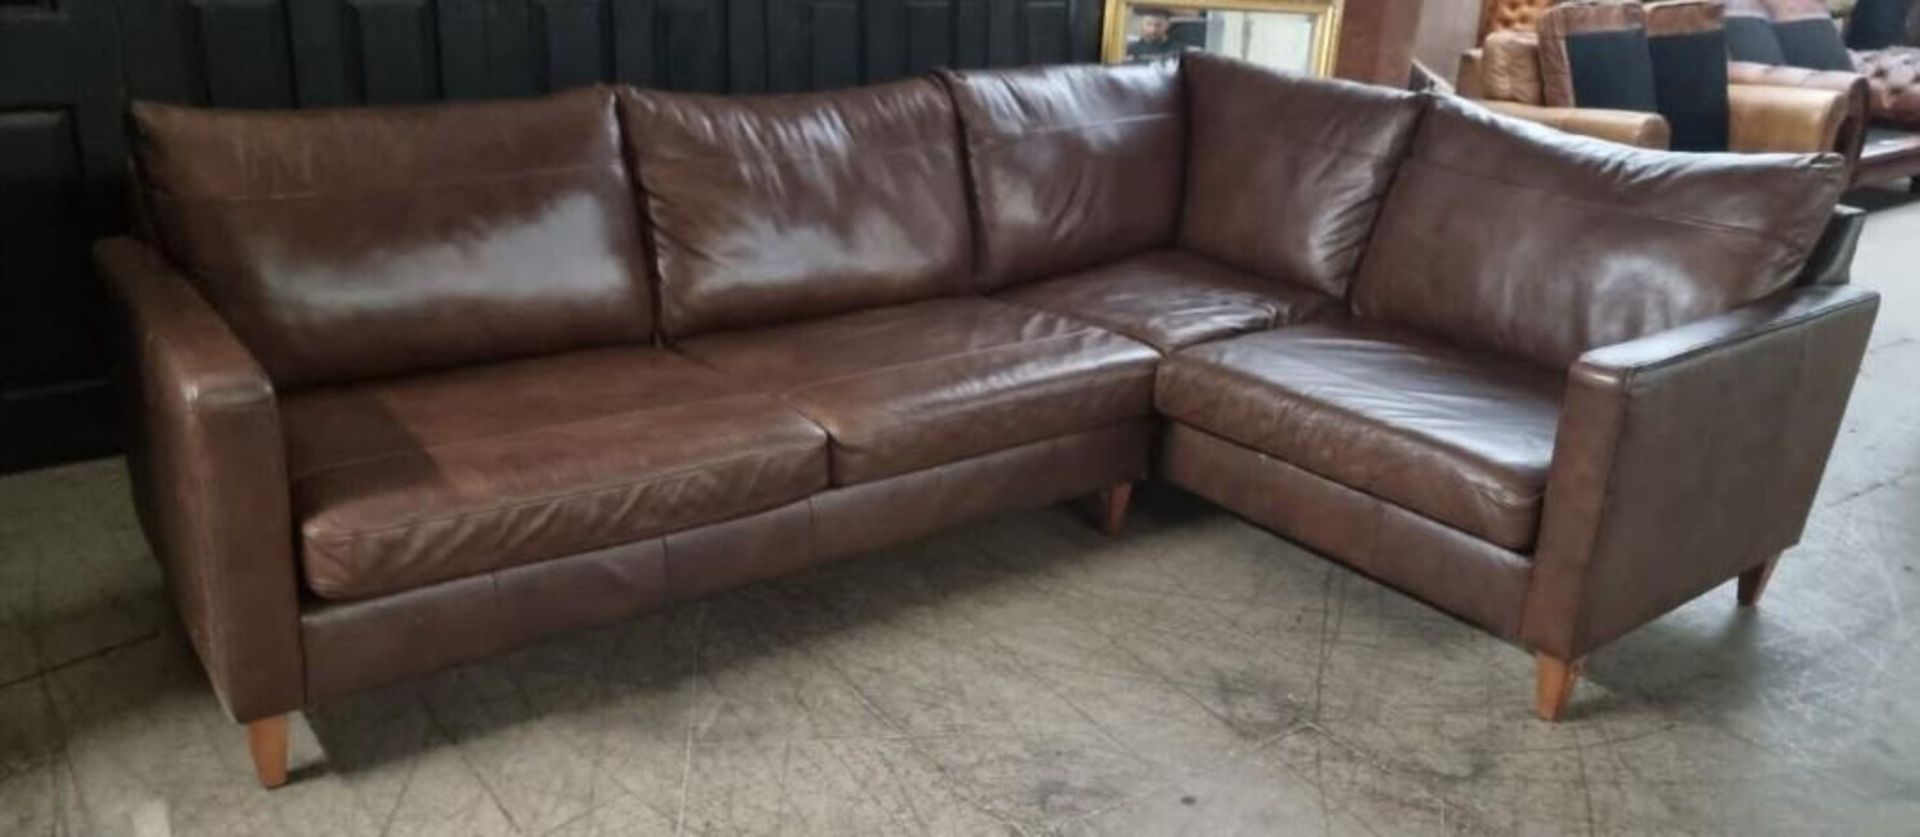 Brand New John Lewis 100% leather Bailey corner sofa in Chestnut Brown - Bild 4 aus 4